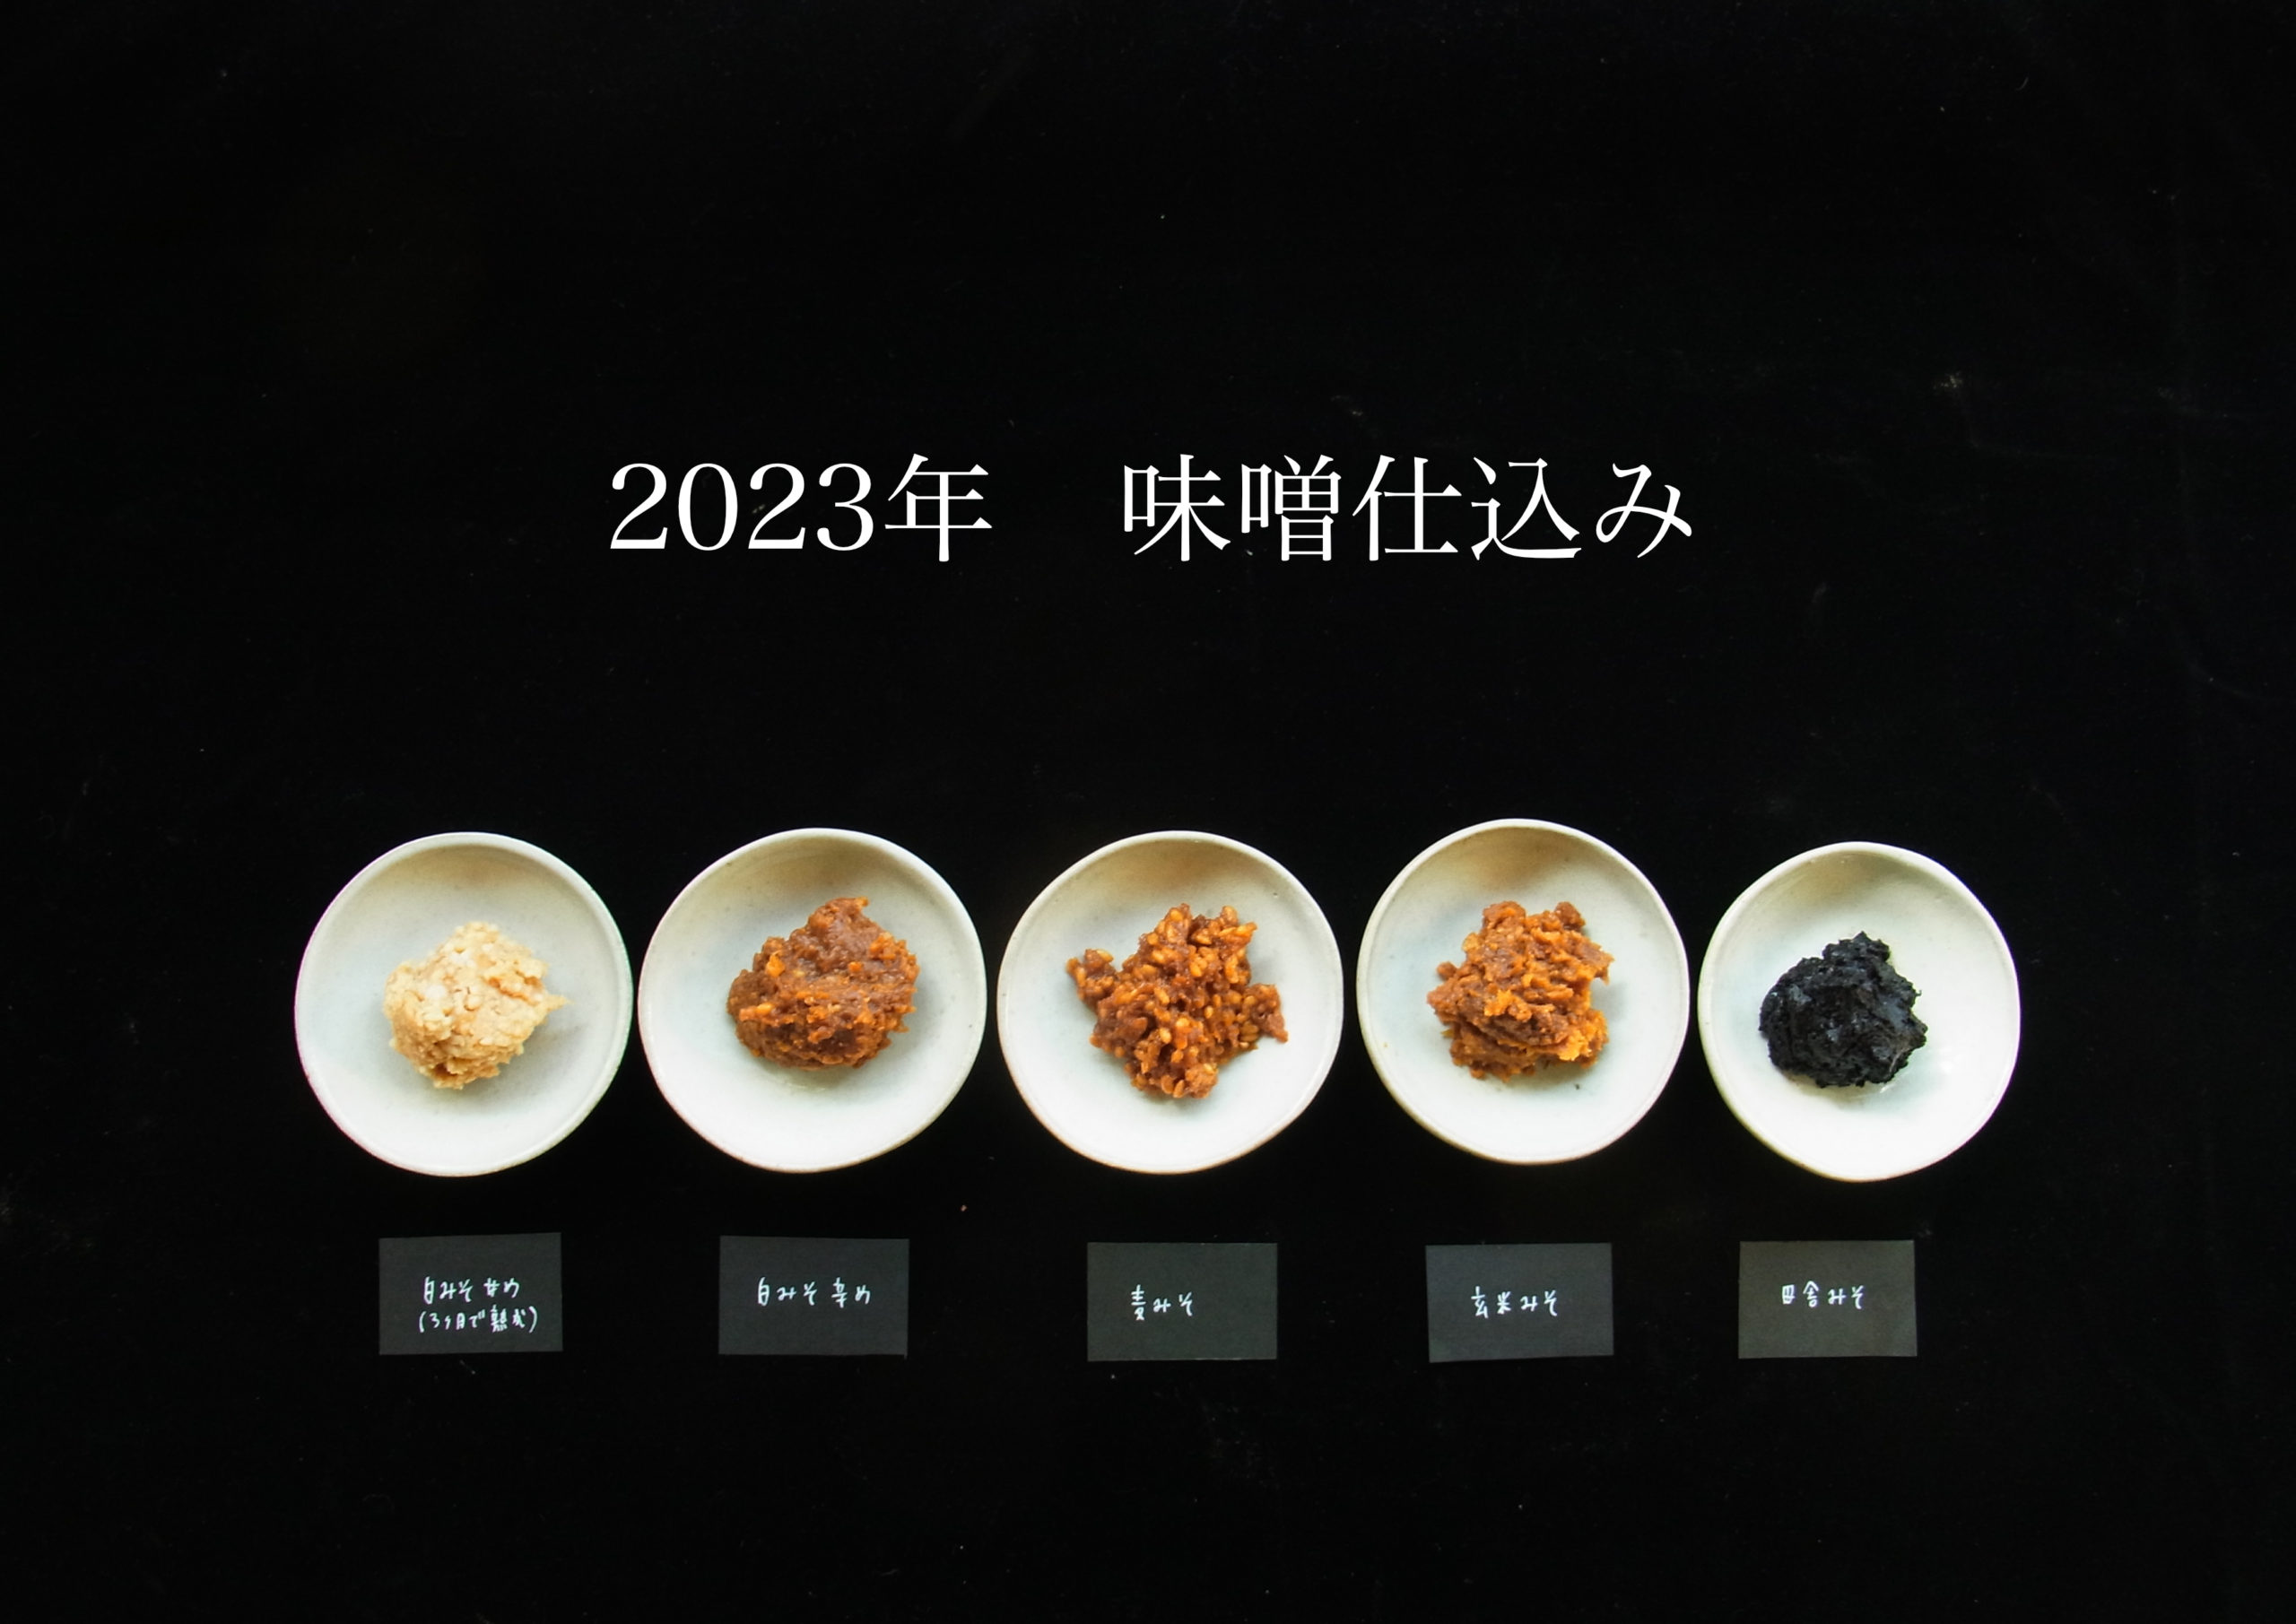 2023年　「古来種野菜と味噌仕込みセット」を限定発売します。